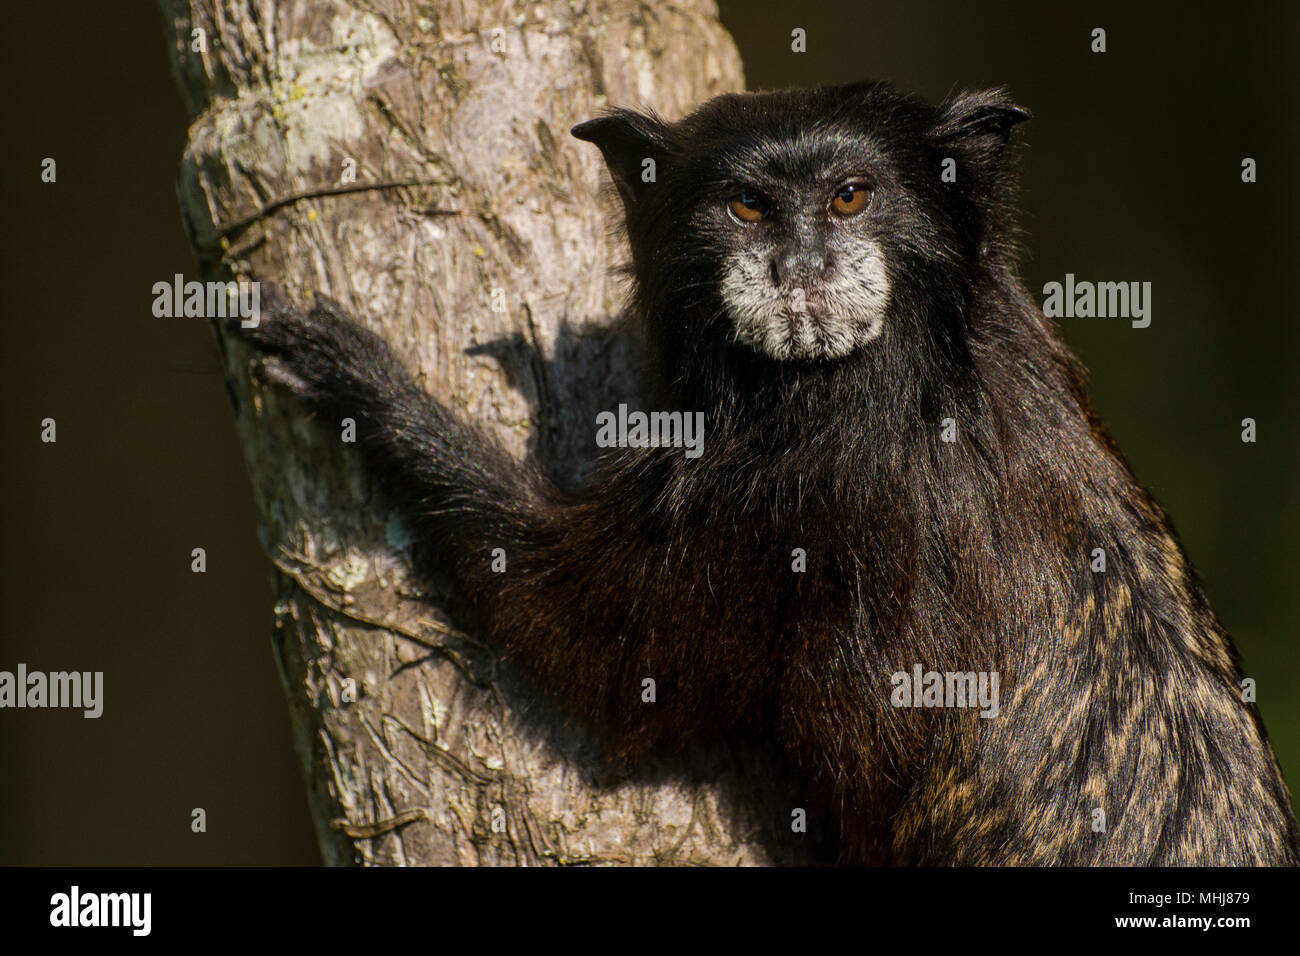 Der Sattel gesichert Tamarin (Saguinus fuscicollis) ist eine kleine Eichhörnchen größe Affe aus der Neotropis, dieses Einzelne ist aus dem Norden von Peru. Stockfoto